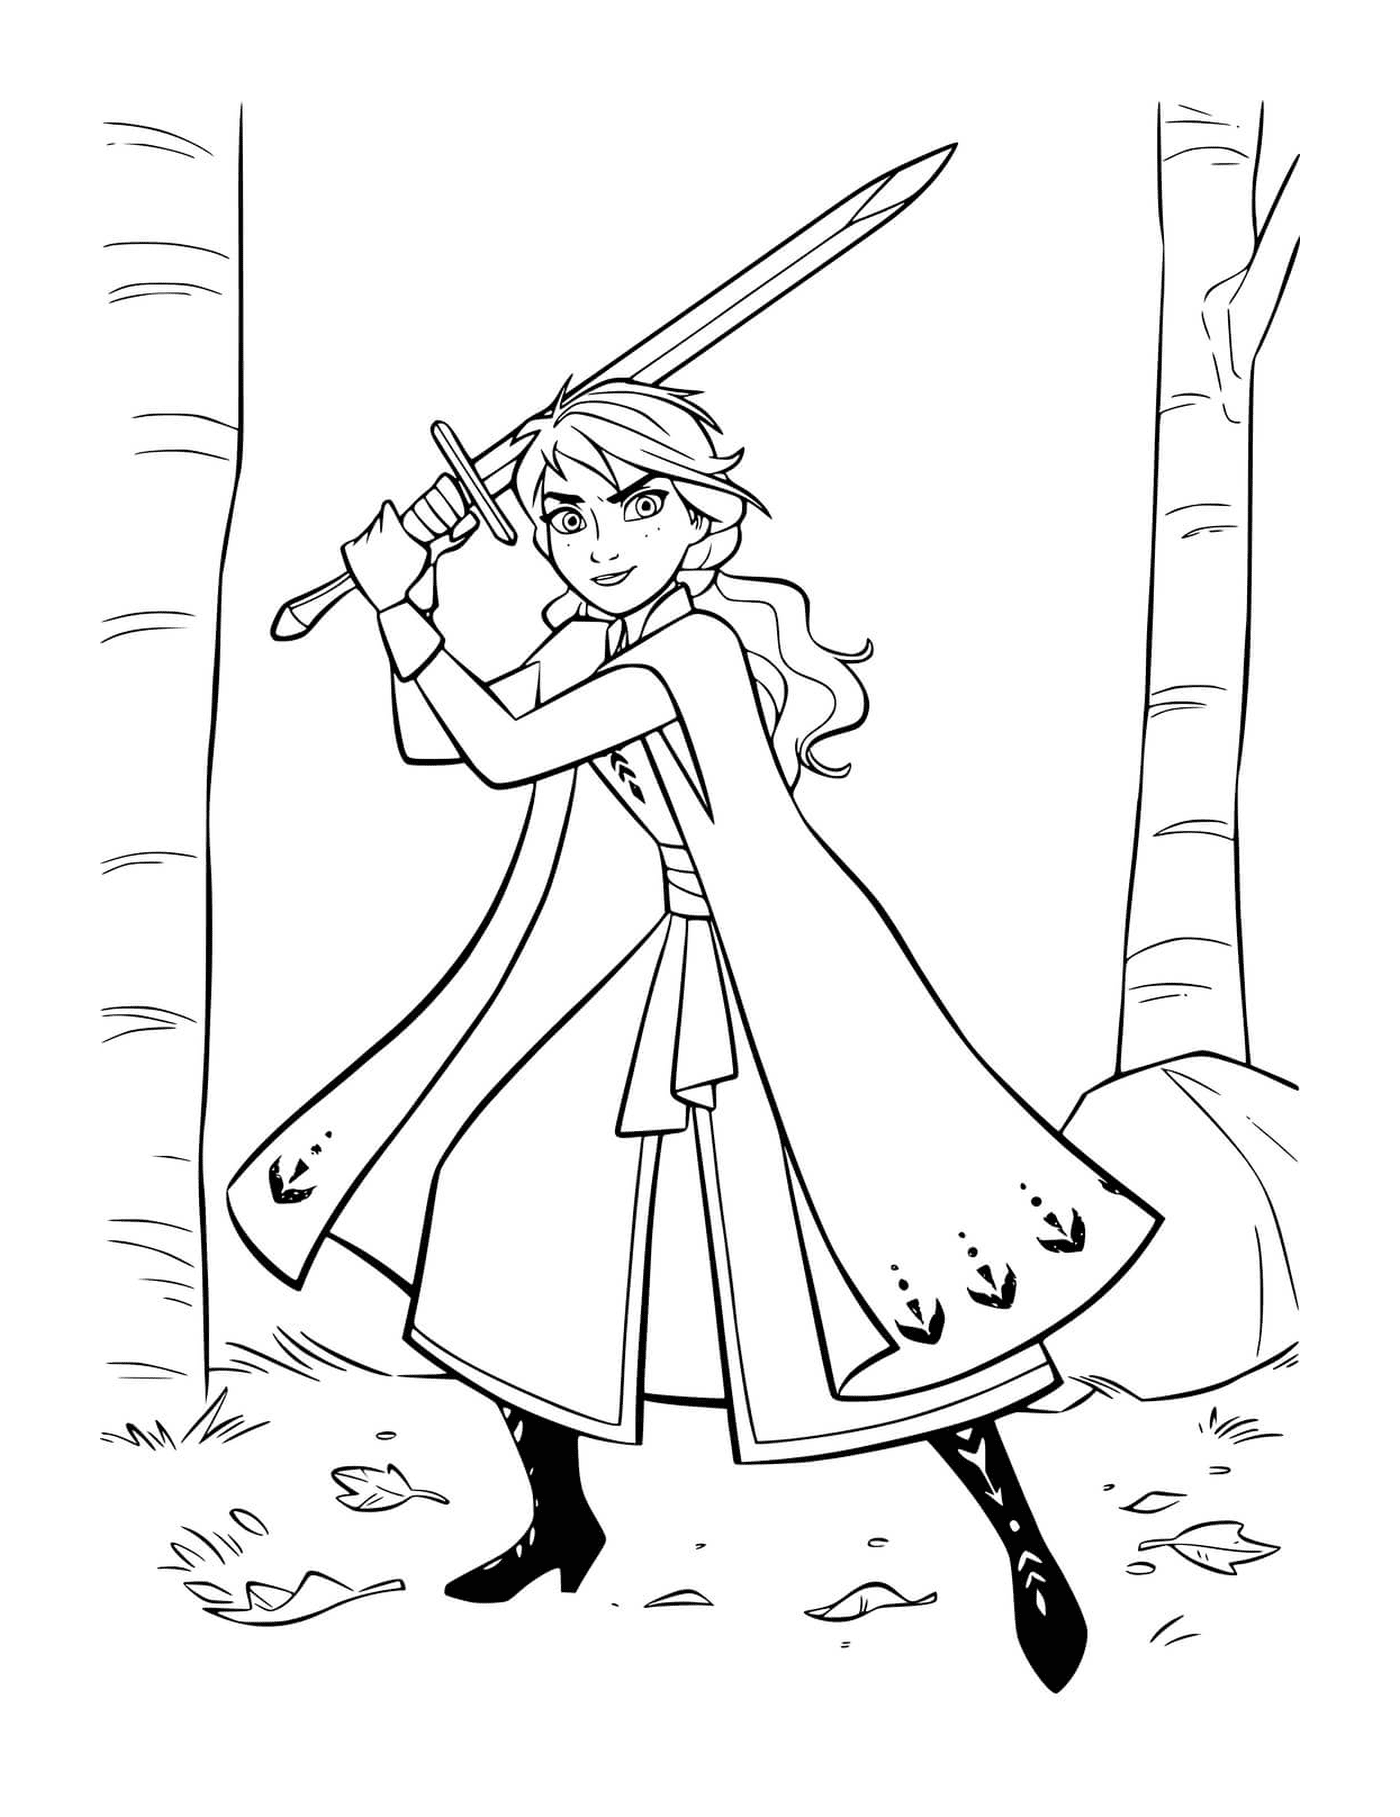 Anna avec une epee pour defendre le royaume